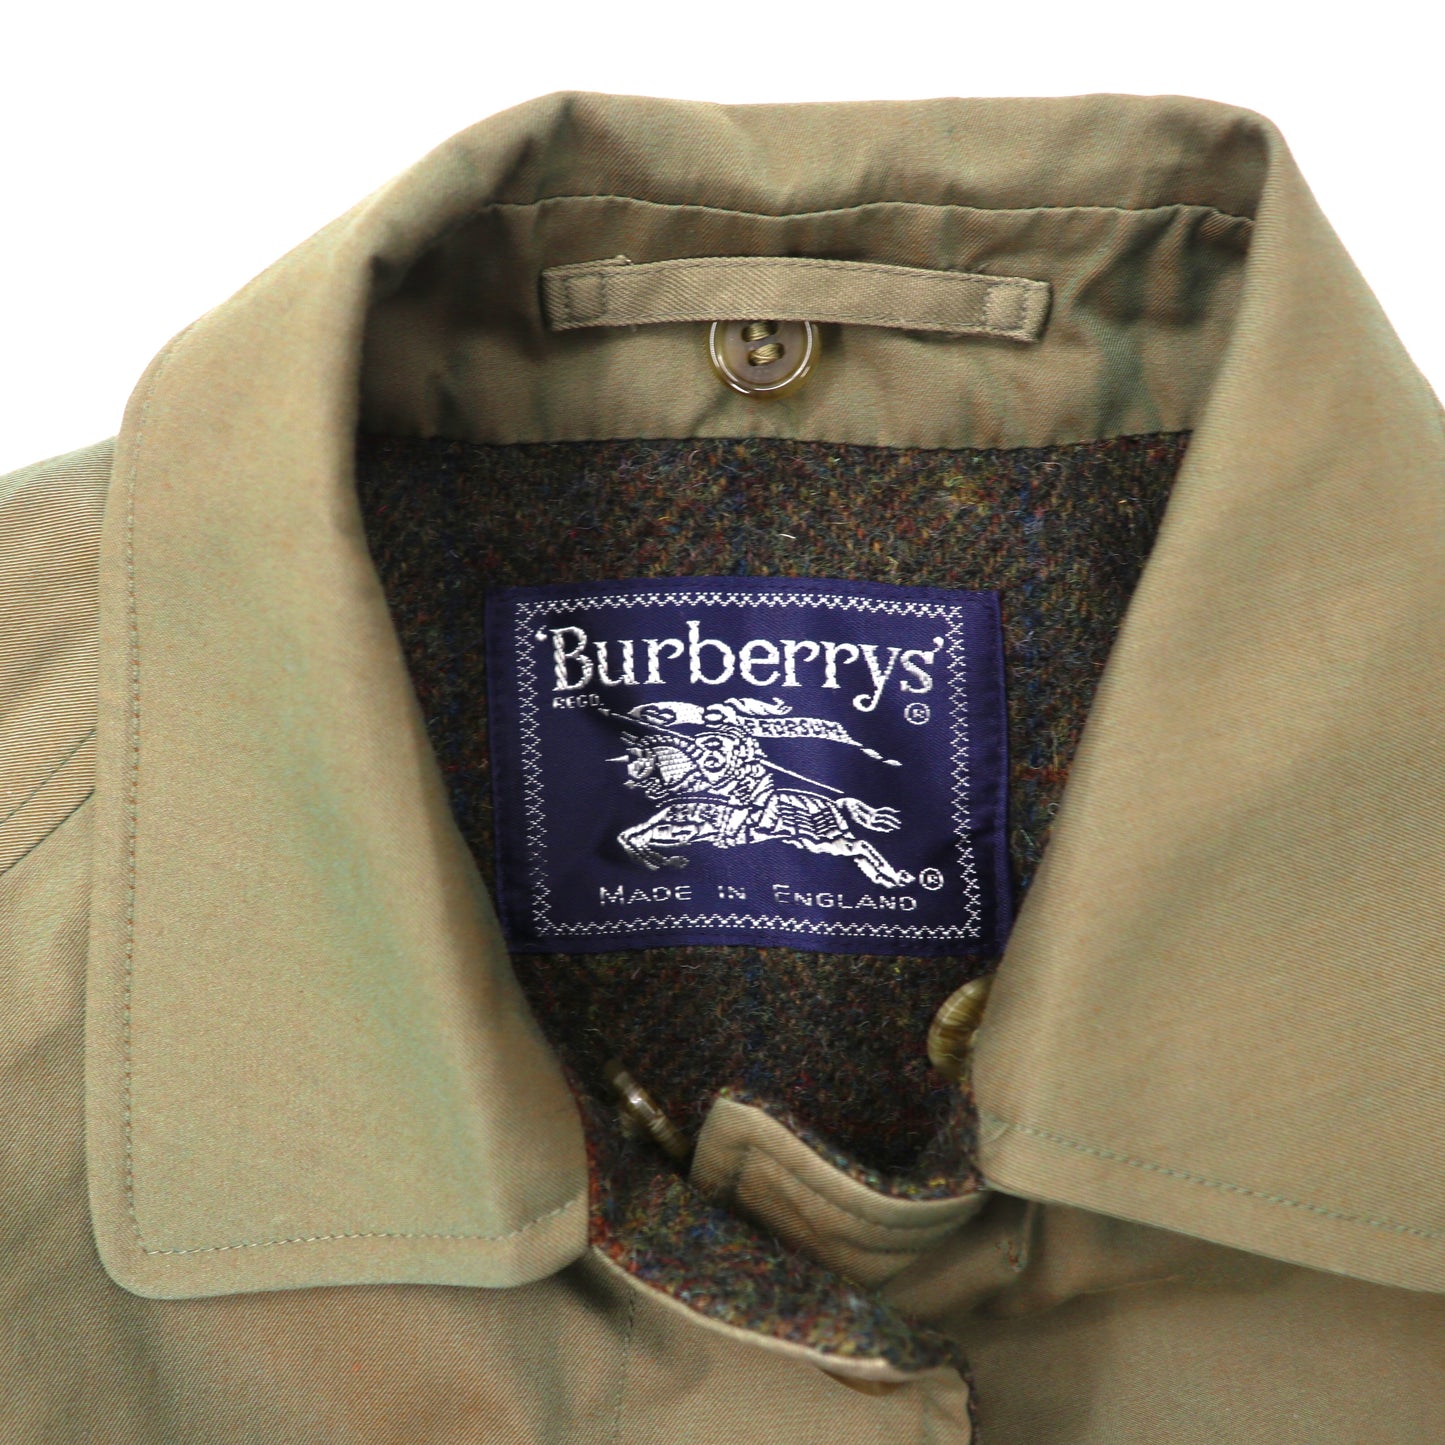 Burberry’s レイヤードコート 8 カーキ 一枚袖 玉虫 裏地ブランケット イングランド製